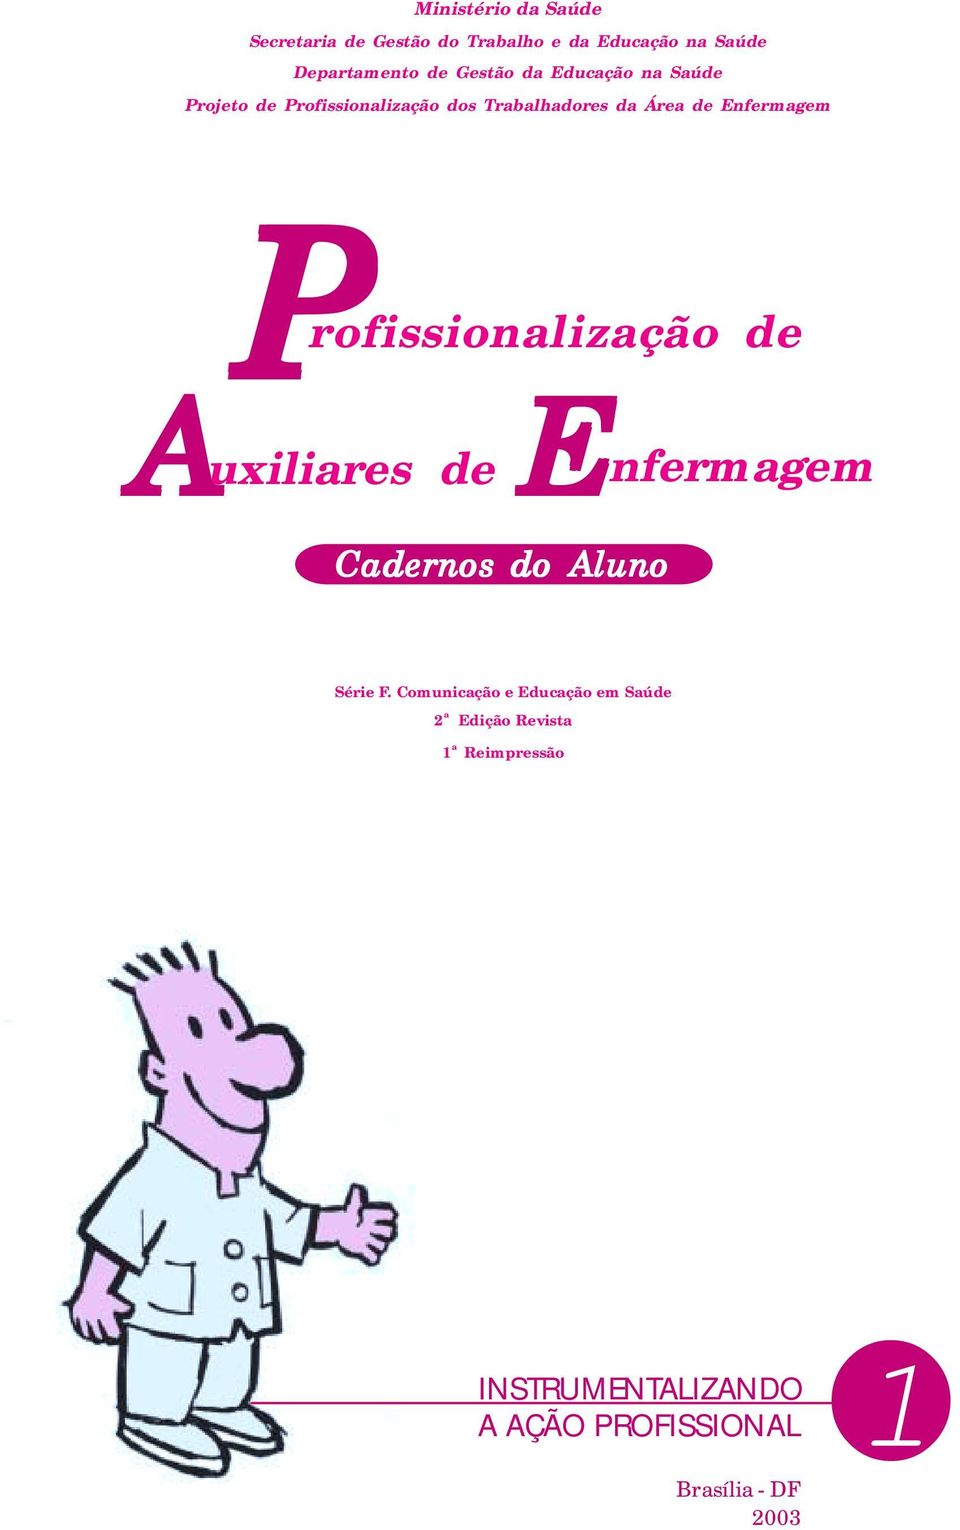 rofissionalização de A E uxiliares de nfermagem Cadernos do Aluno Série F.